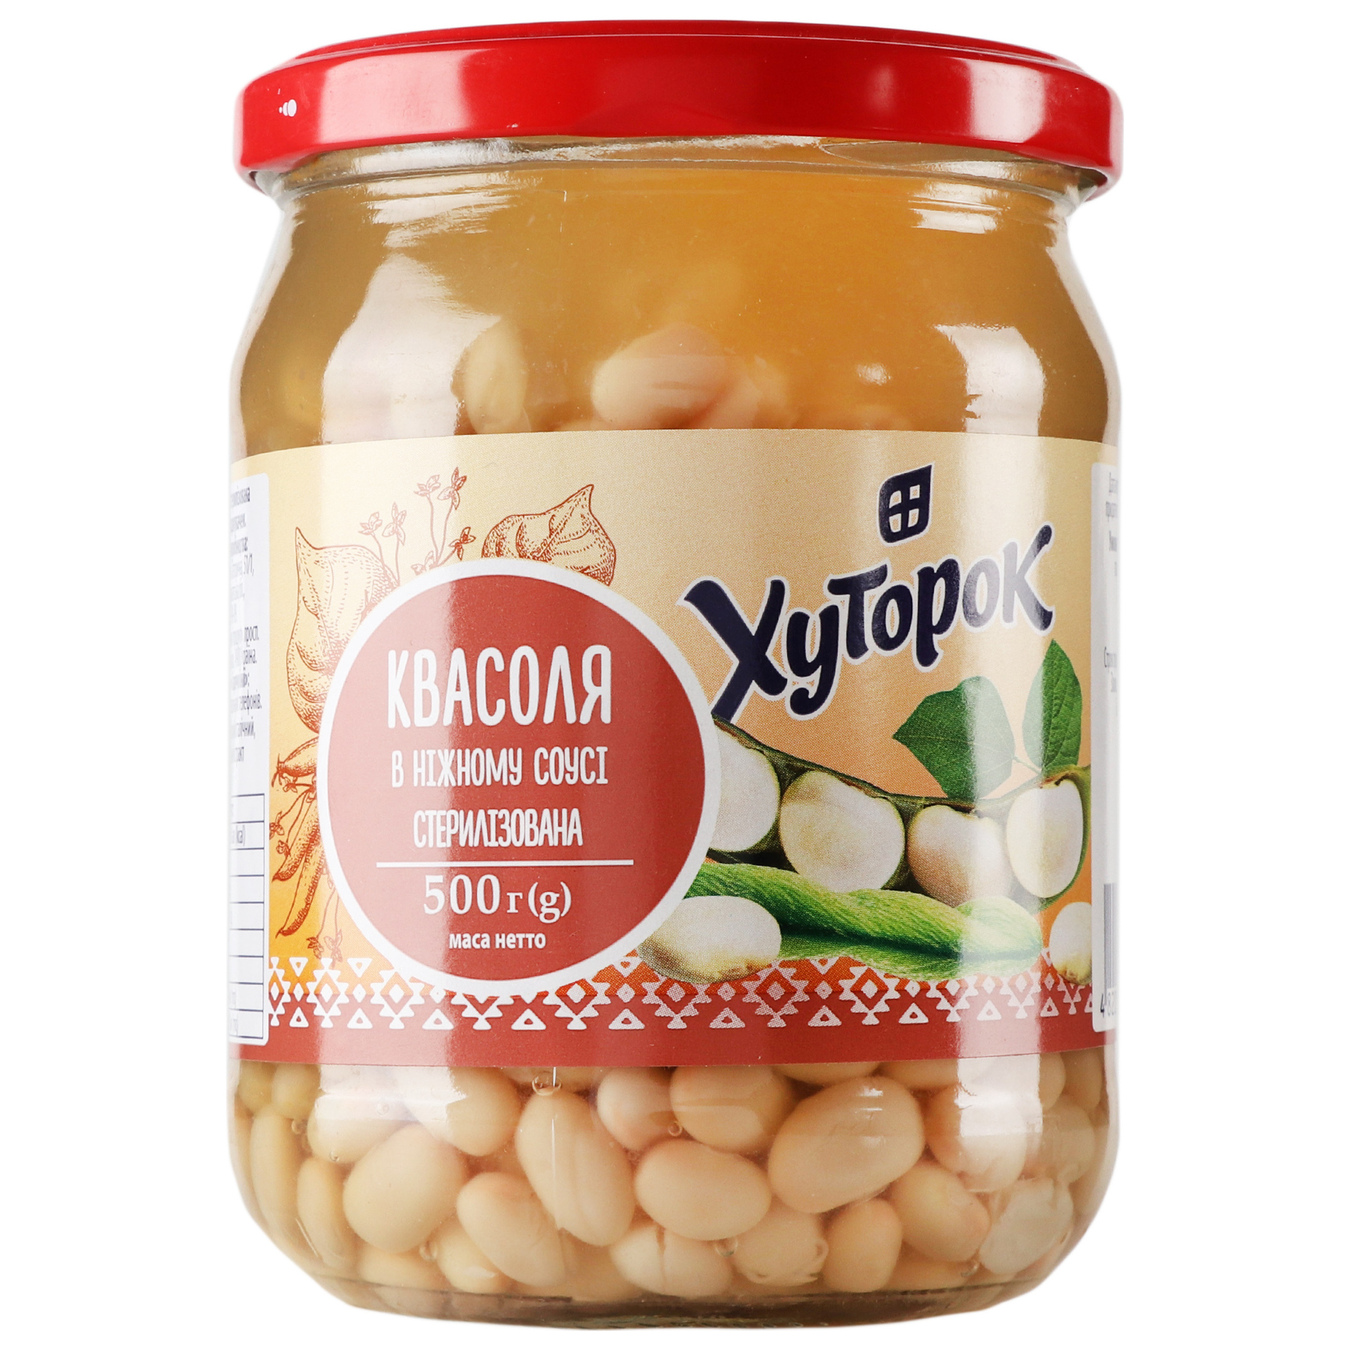 Khutorok beans in a delicate sauce 500g glass jar